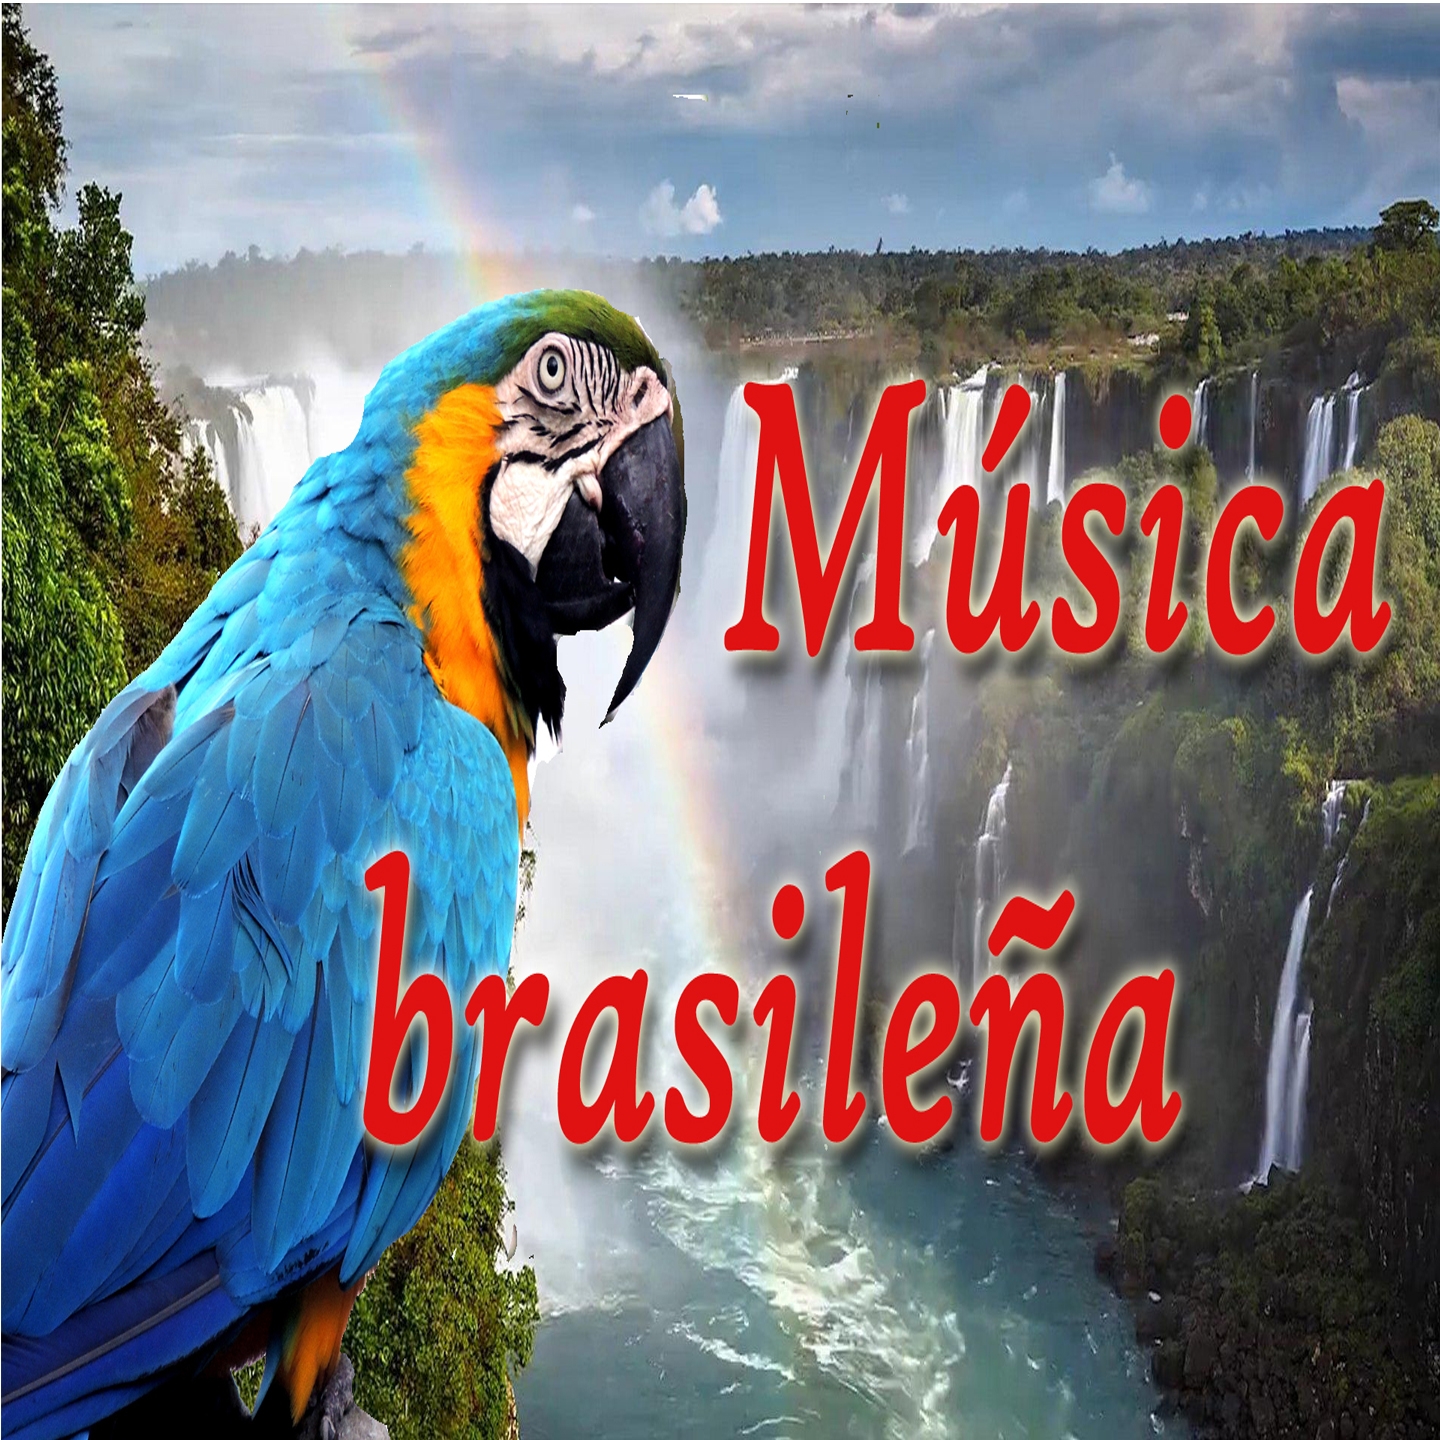 Música Brasileña